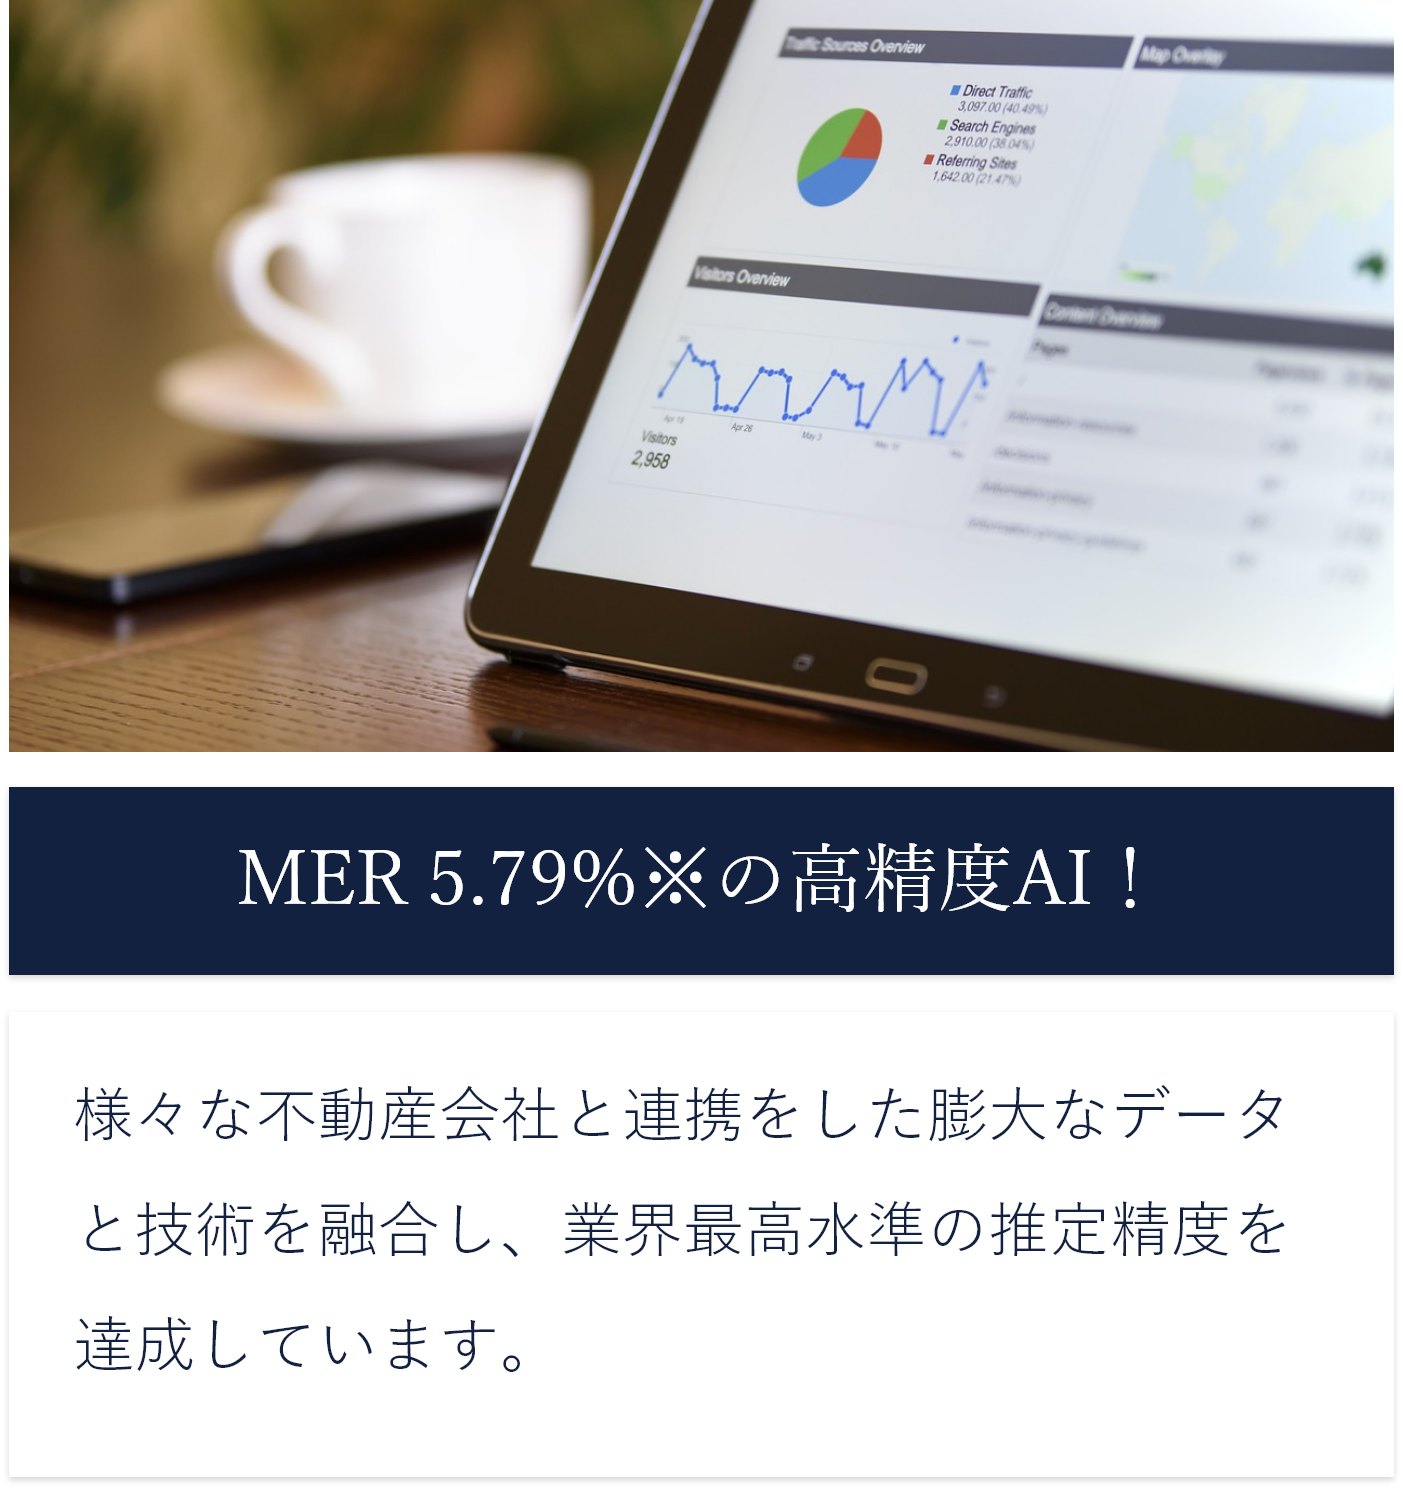 MER※1 5.79%※2の高精度AI！ 様々な不動産会社と連携をした膨大なデータと技術を
              融合し、業界最高水準の推定精度を達成しています。